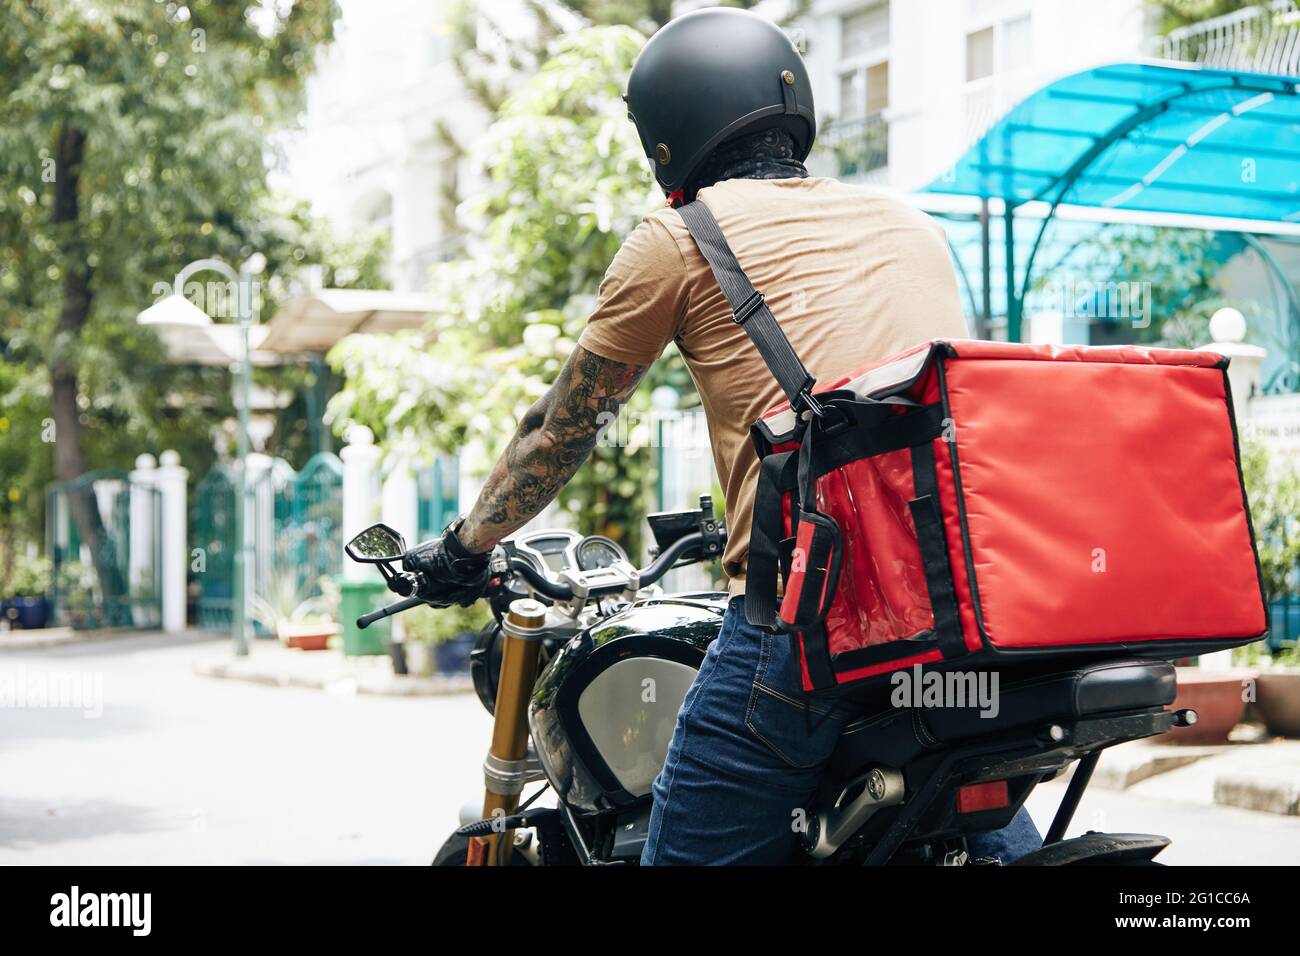 Kurier mit großem Thermobeutel, der auf dem Motorrad fährt, wenn er Lebensmittel an Kunden liefert Stockfoto